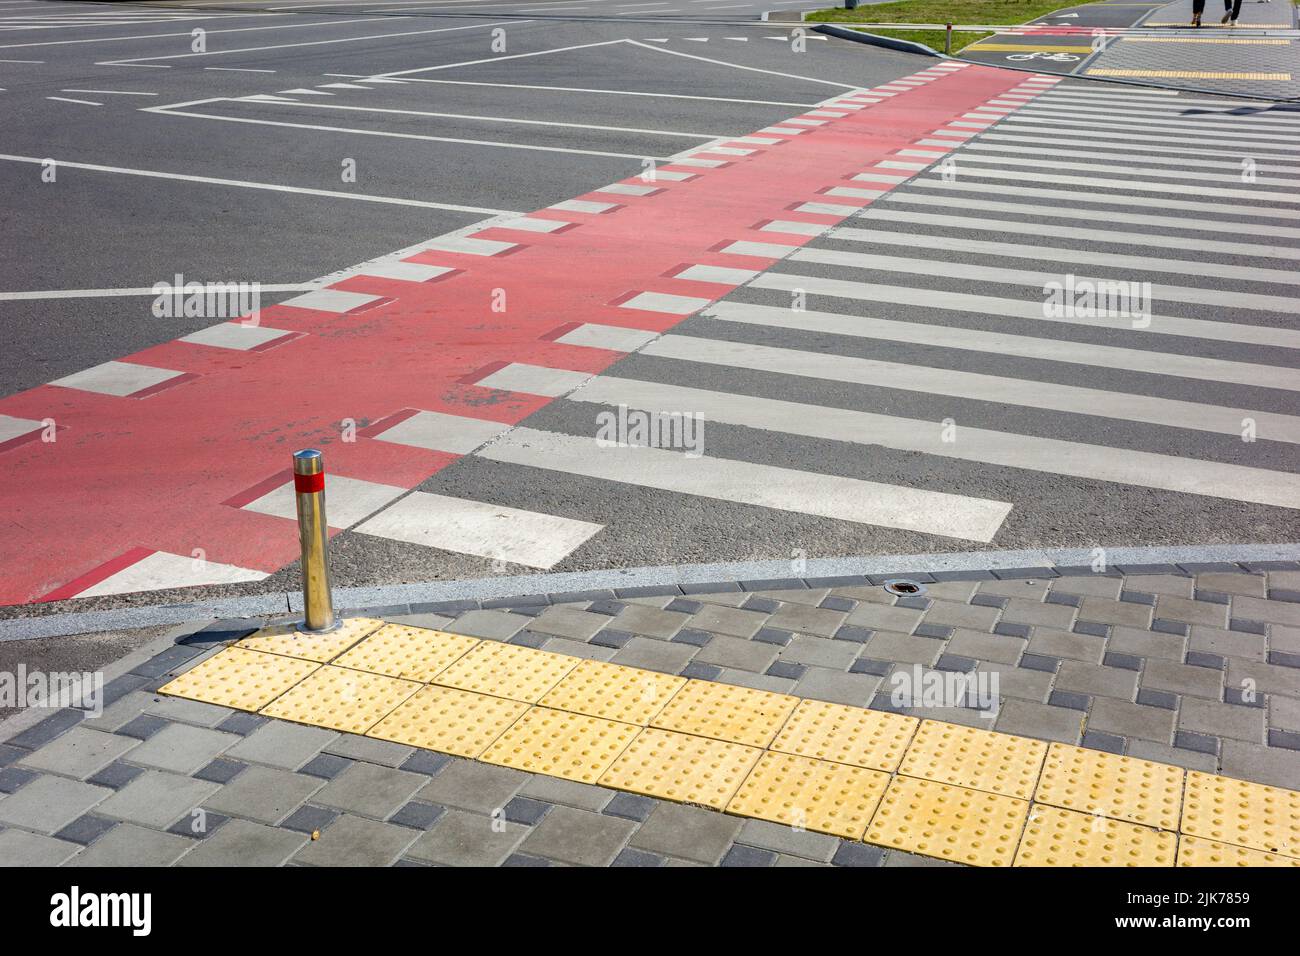 Fußgängerüberweg mit Zähnen und roten Markierungen für die Bewegung von Fahrrädern auf der Fahrbahn Stockfoto